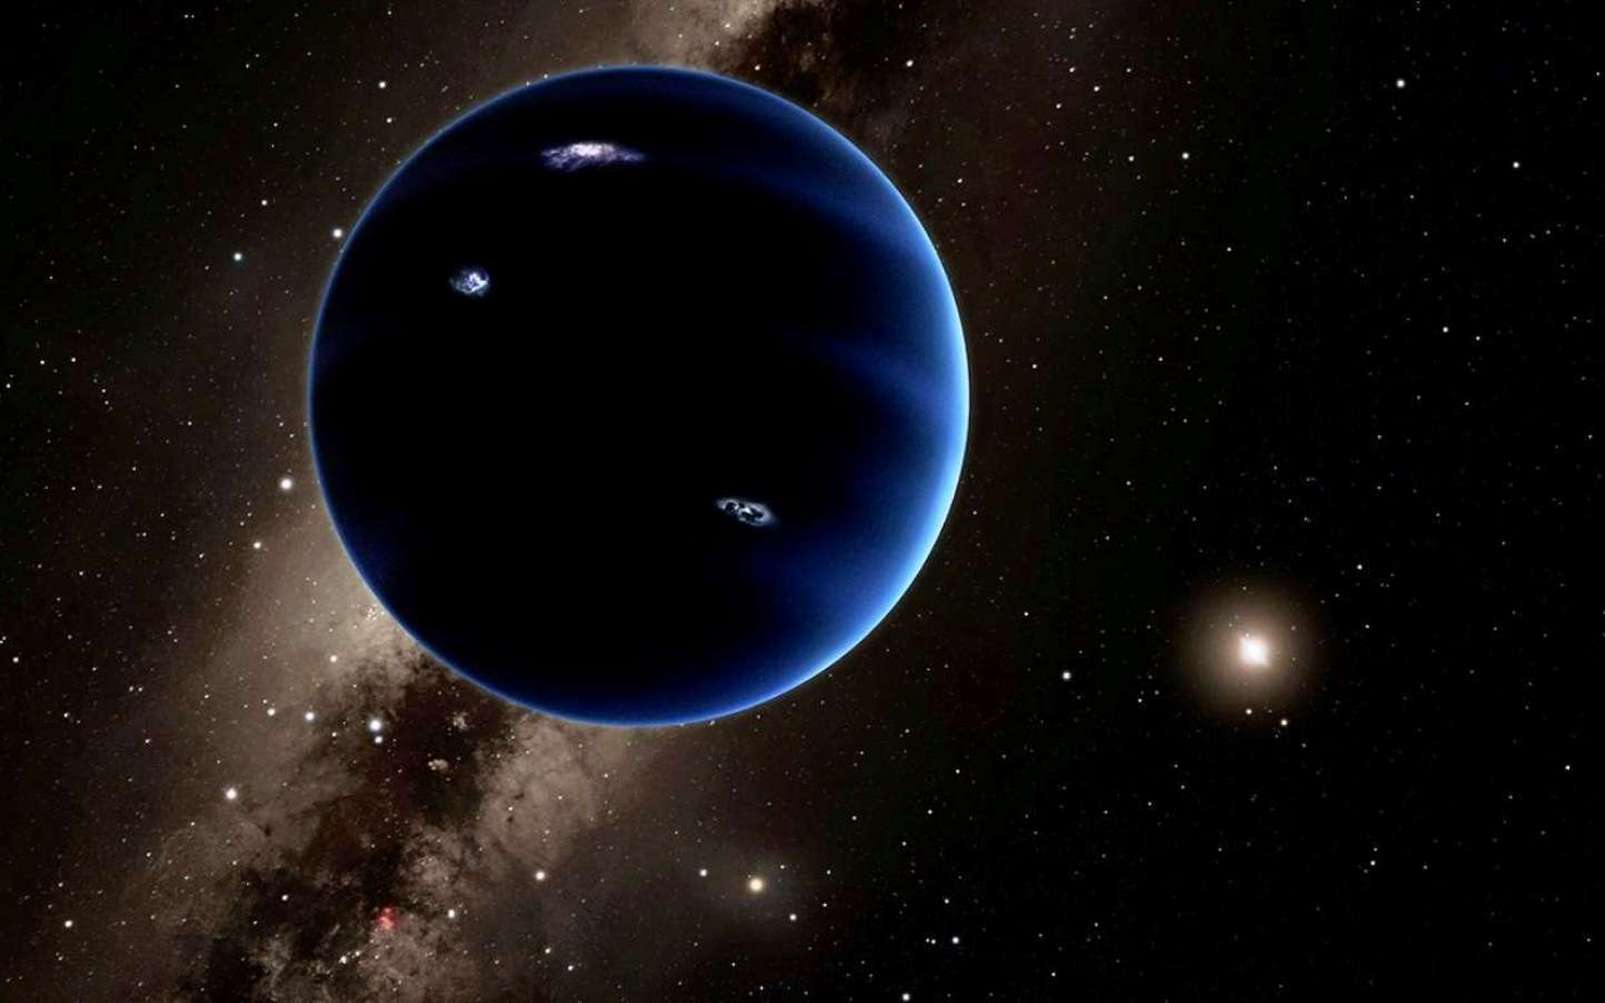 Une vue d'artiste de la neuvième planète qui existe peut-être à plus de 200 fois la distance de la Terre au Soleil, loin au-delà de l'orbite de Pluton. Sa masse est estimée à environ 10 fois celle de la Terre. Elle devrait, logiquement, être enveloppée par une épaisse atmosphère d'hydrogène et d'hélium qui la ferait ressembler à Neptune. © Caltech, R. Hurt (Ipac)